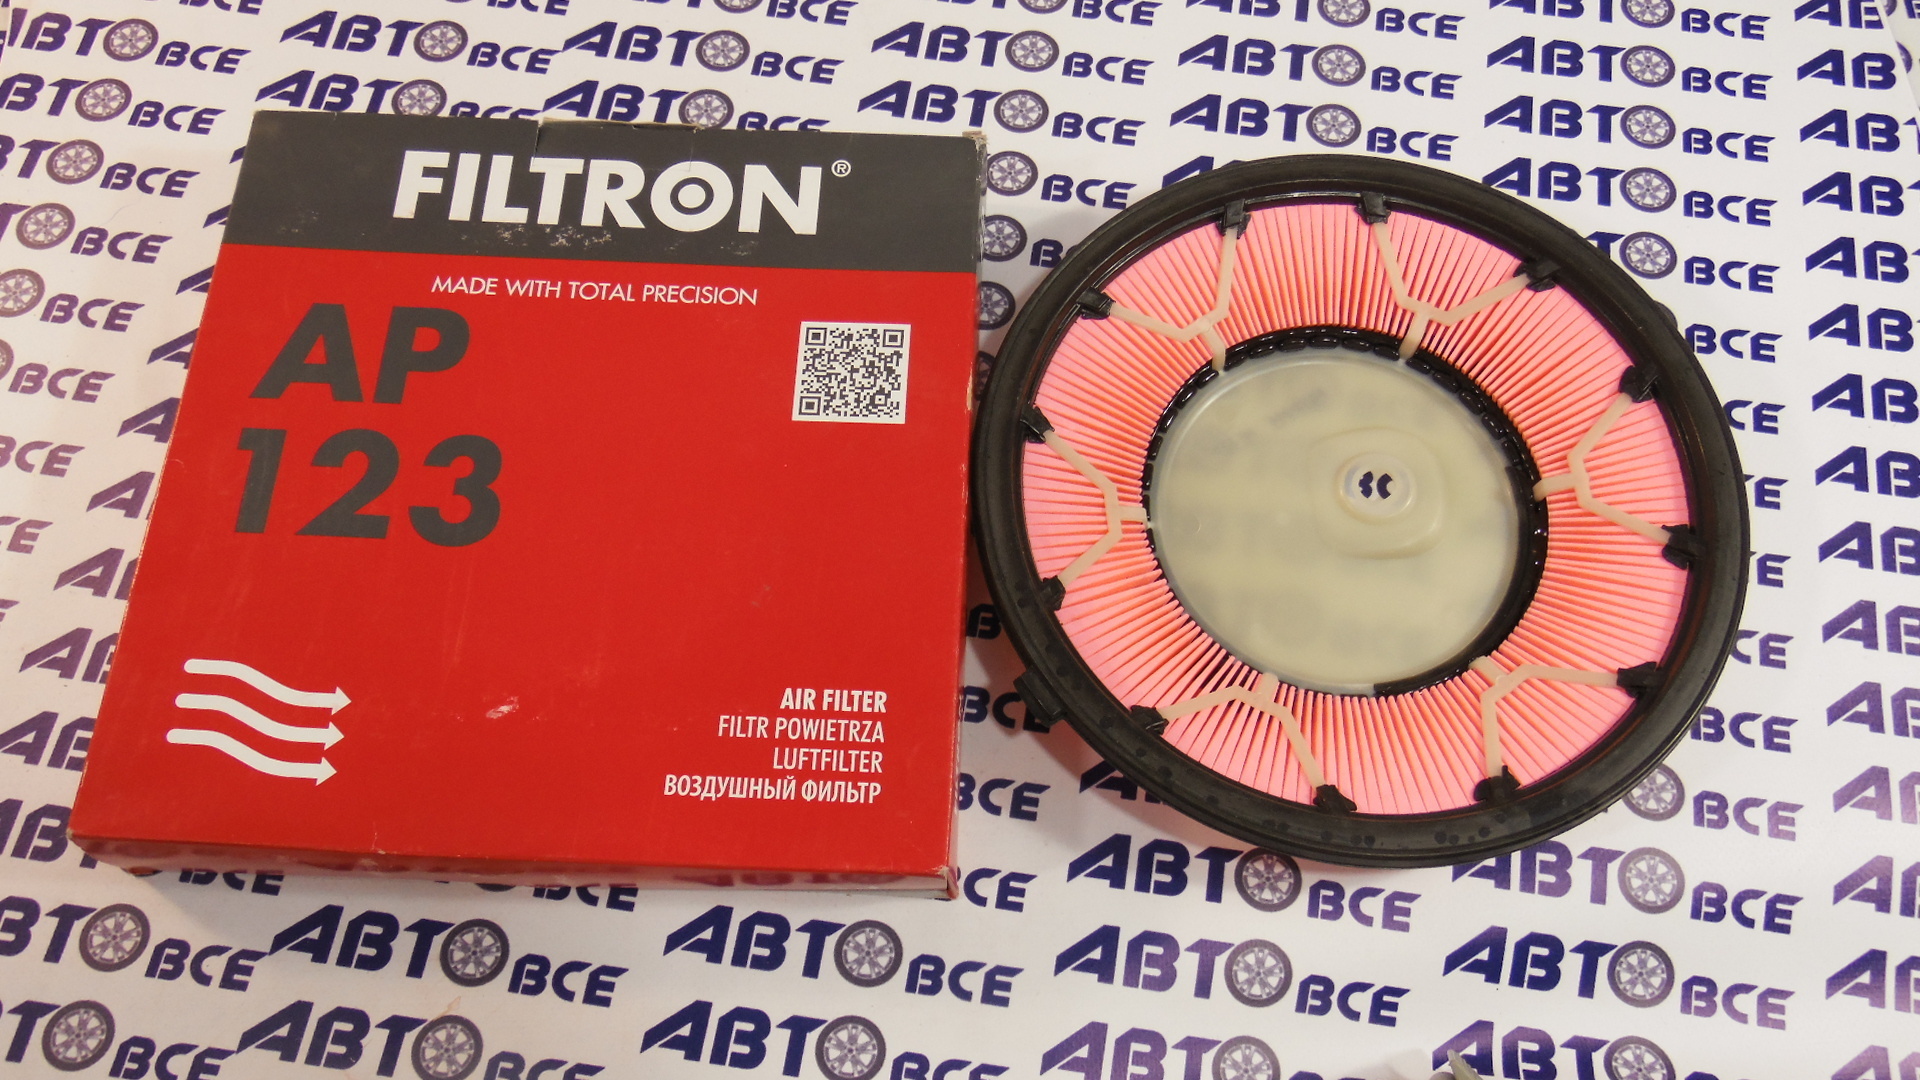 Фильтр воздушный AP123 FILTRON